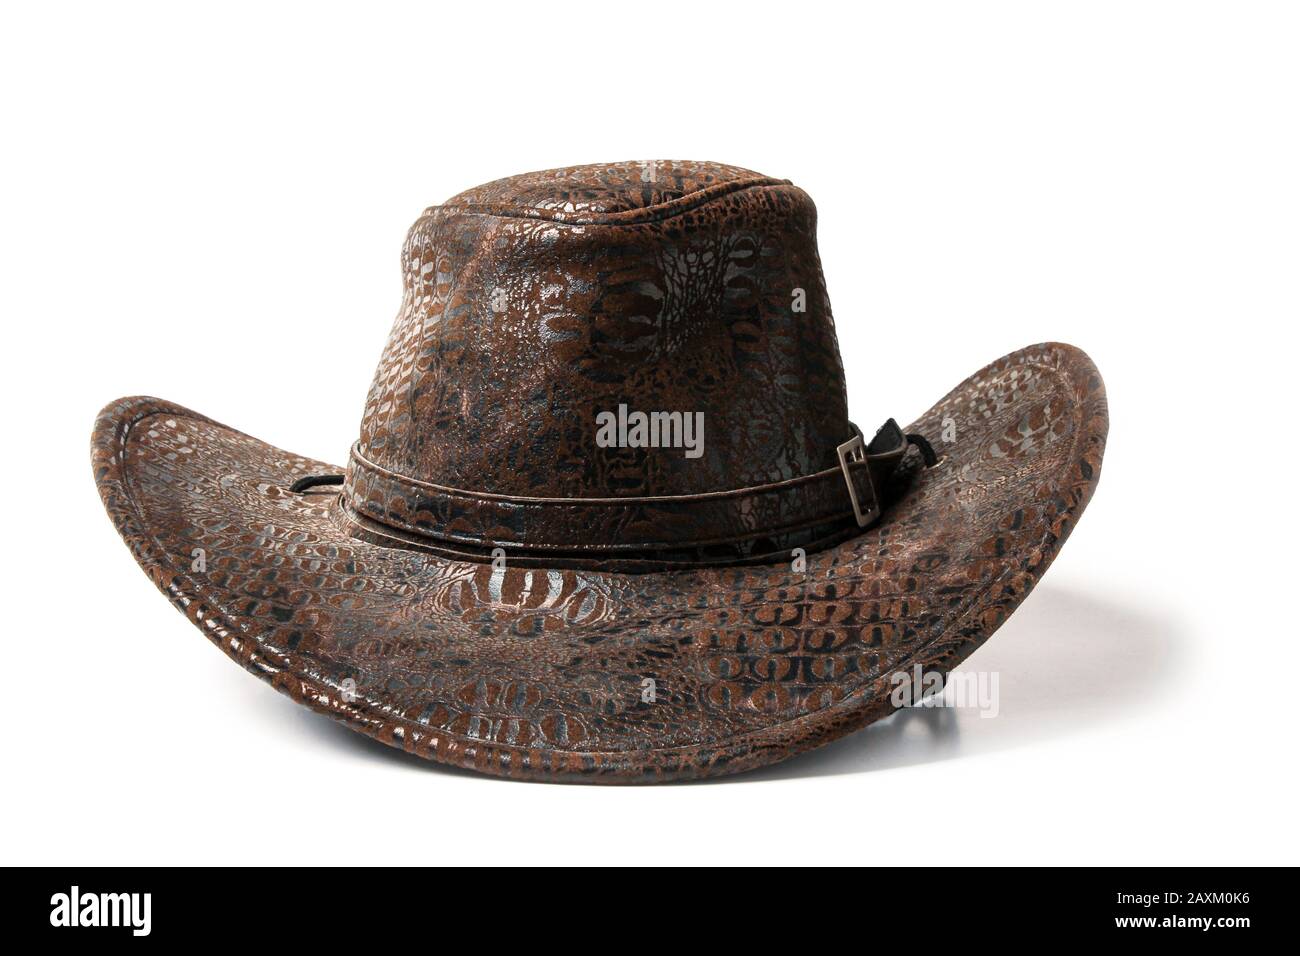 Wild West Cowboy Show Banque d'image et photos - Alamy